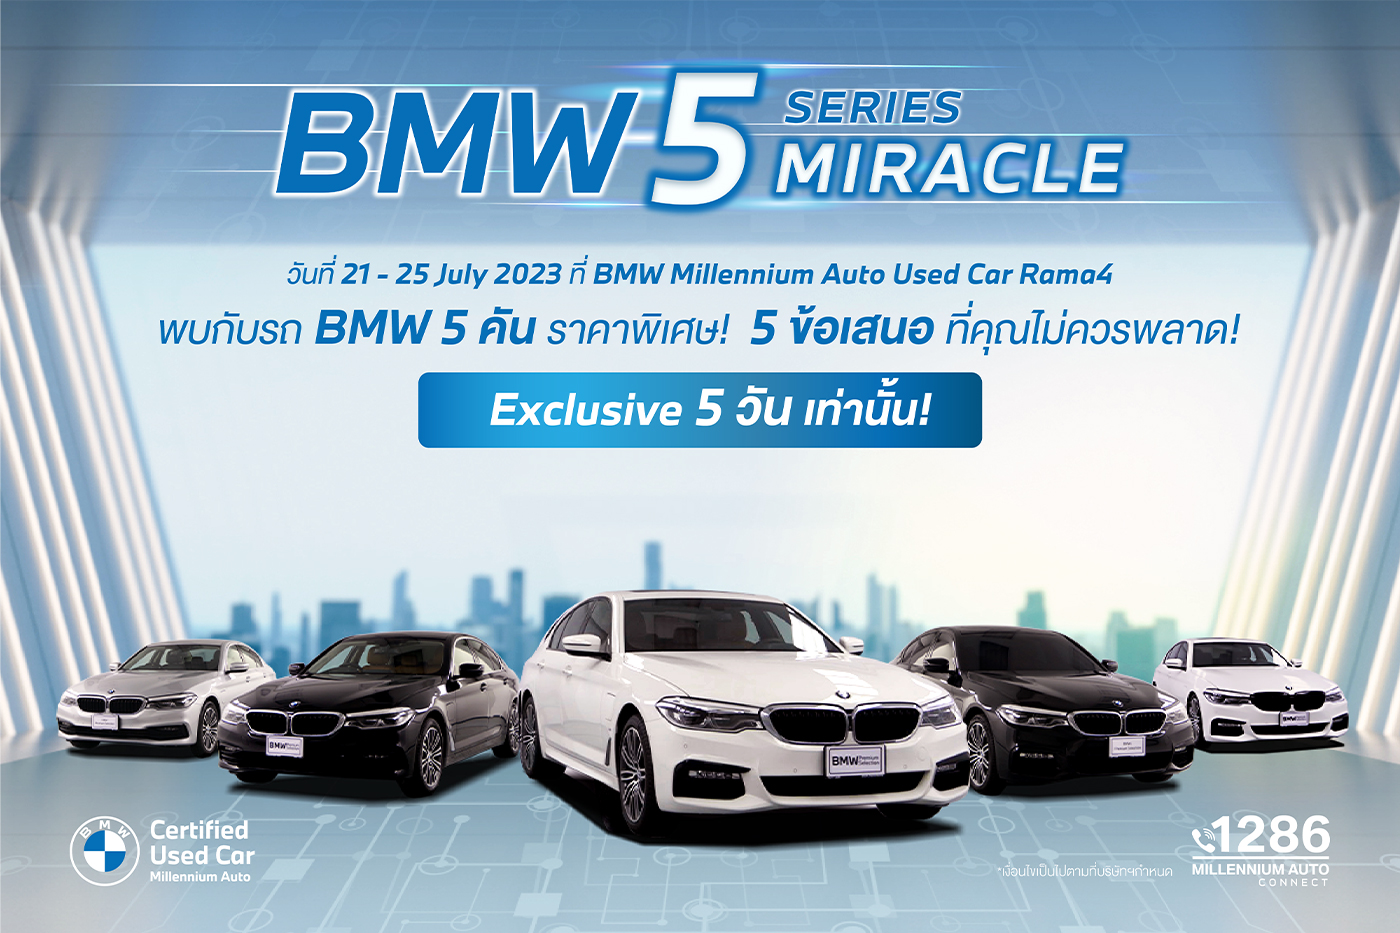 BMW 5 Series Miracle กับ 5 ข้อเสนอที่คุณไม่ควรพลาด!